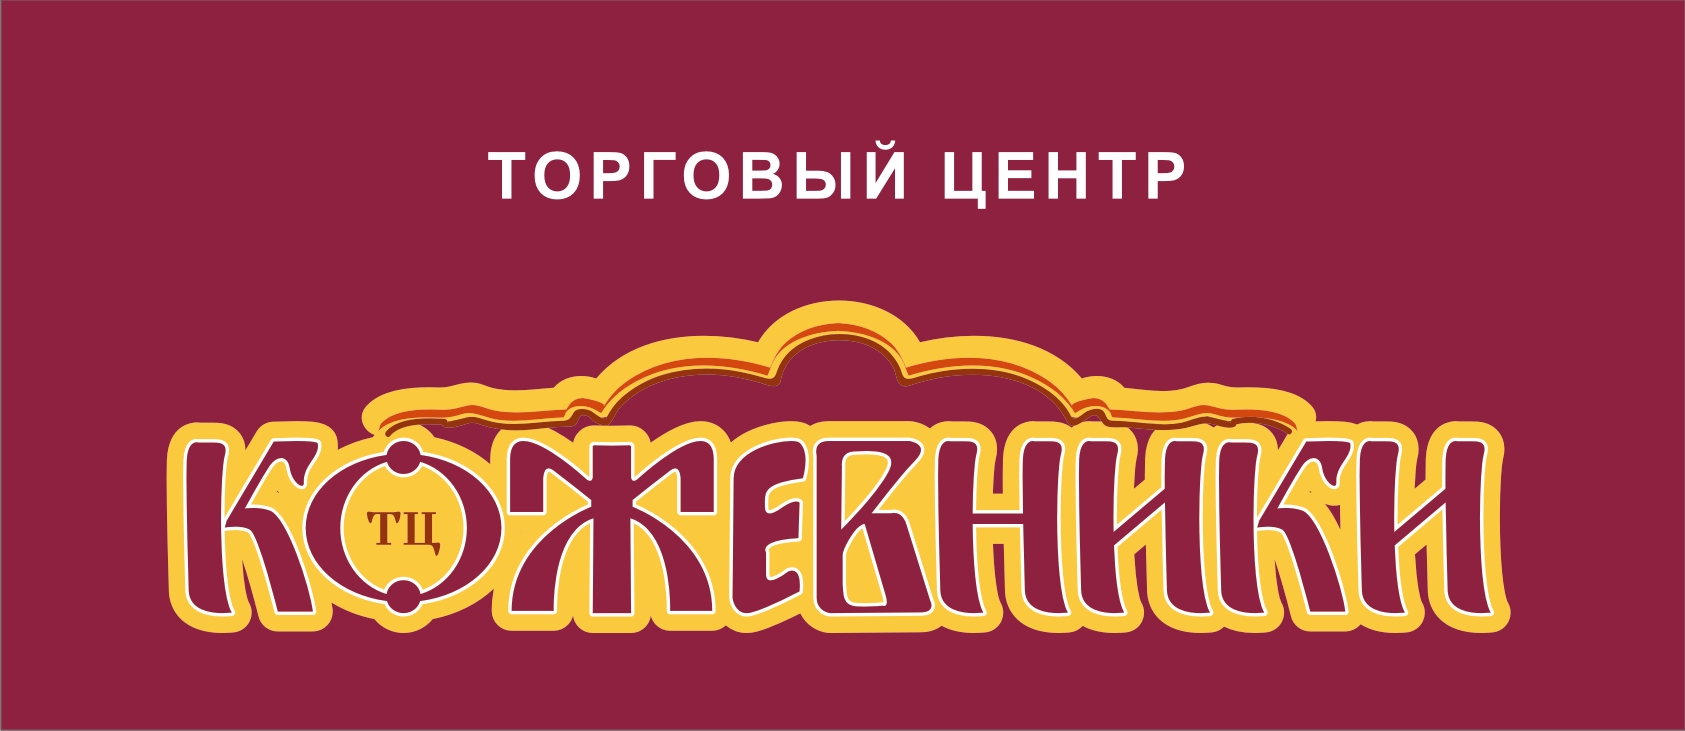 Логотип и фирменный стиль торгового центра "Кожевники" в Москве разработала компания Канаян